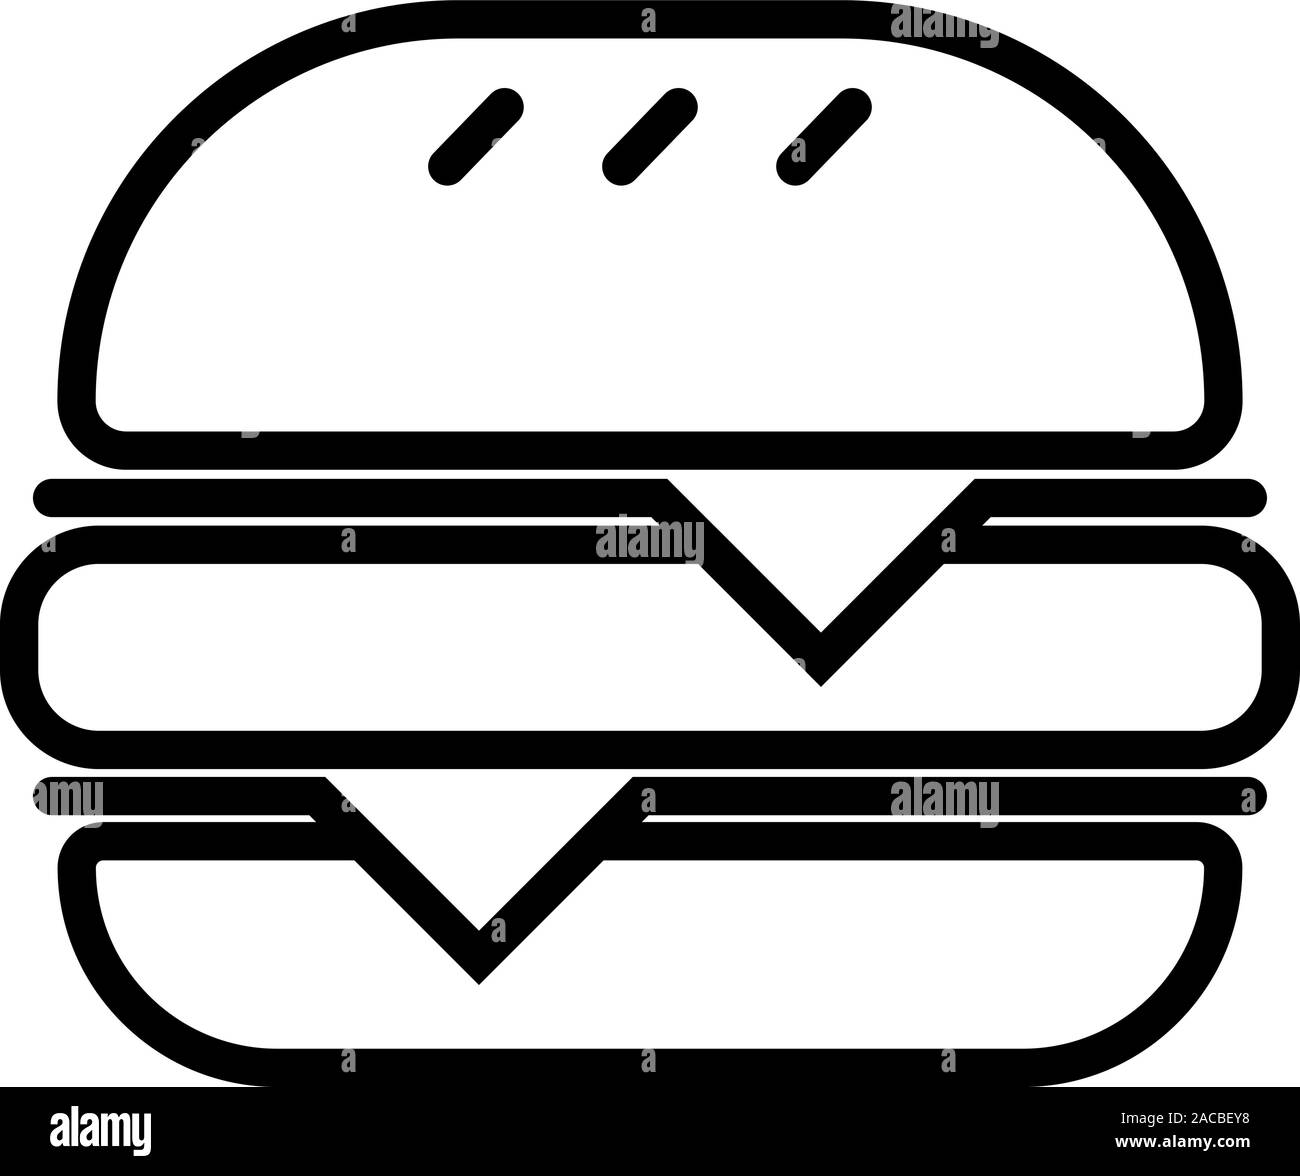 Schwarz skizzierte Symbol eines Hamburger, auf weißem Hintergrund. Stock Vektor